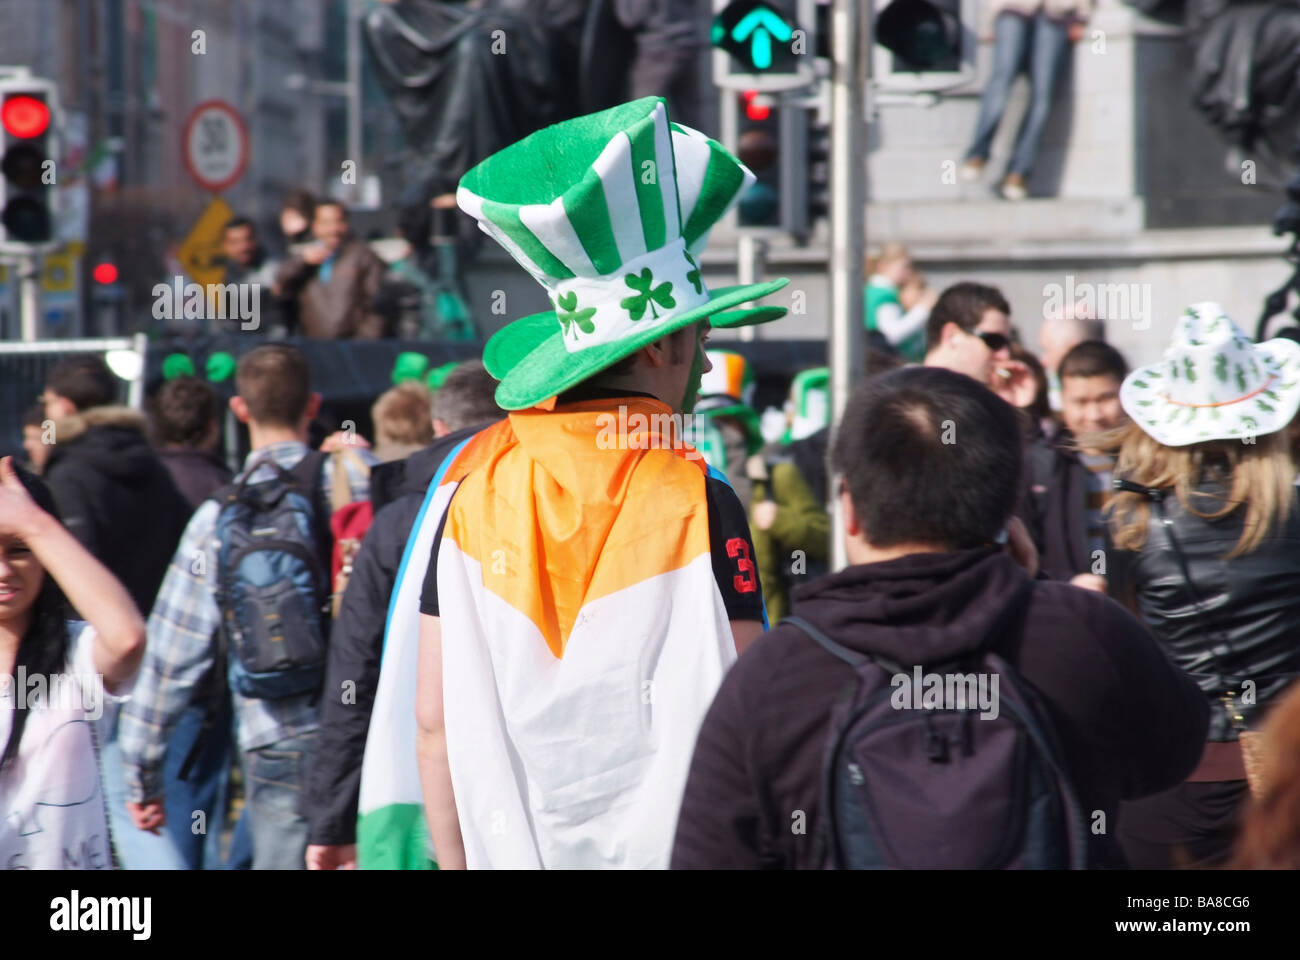 St Patrick s Day Dublin Ireland Stock Photo